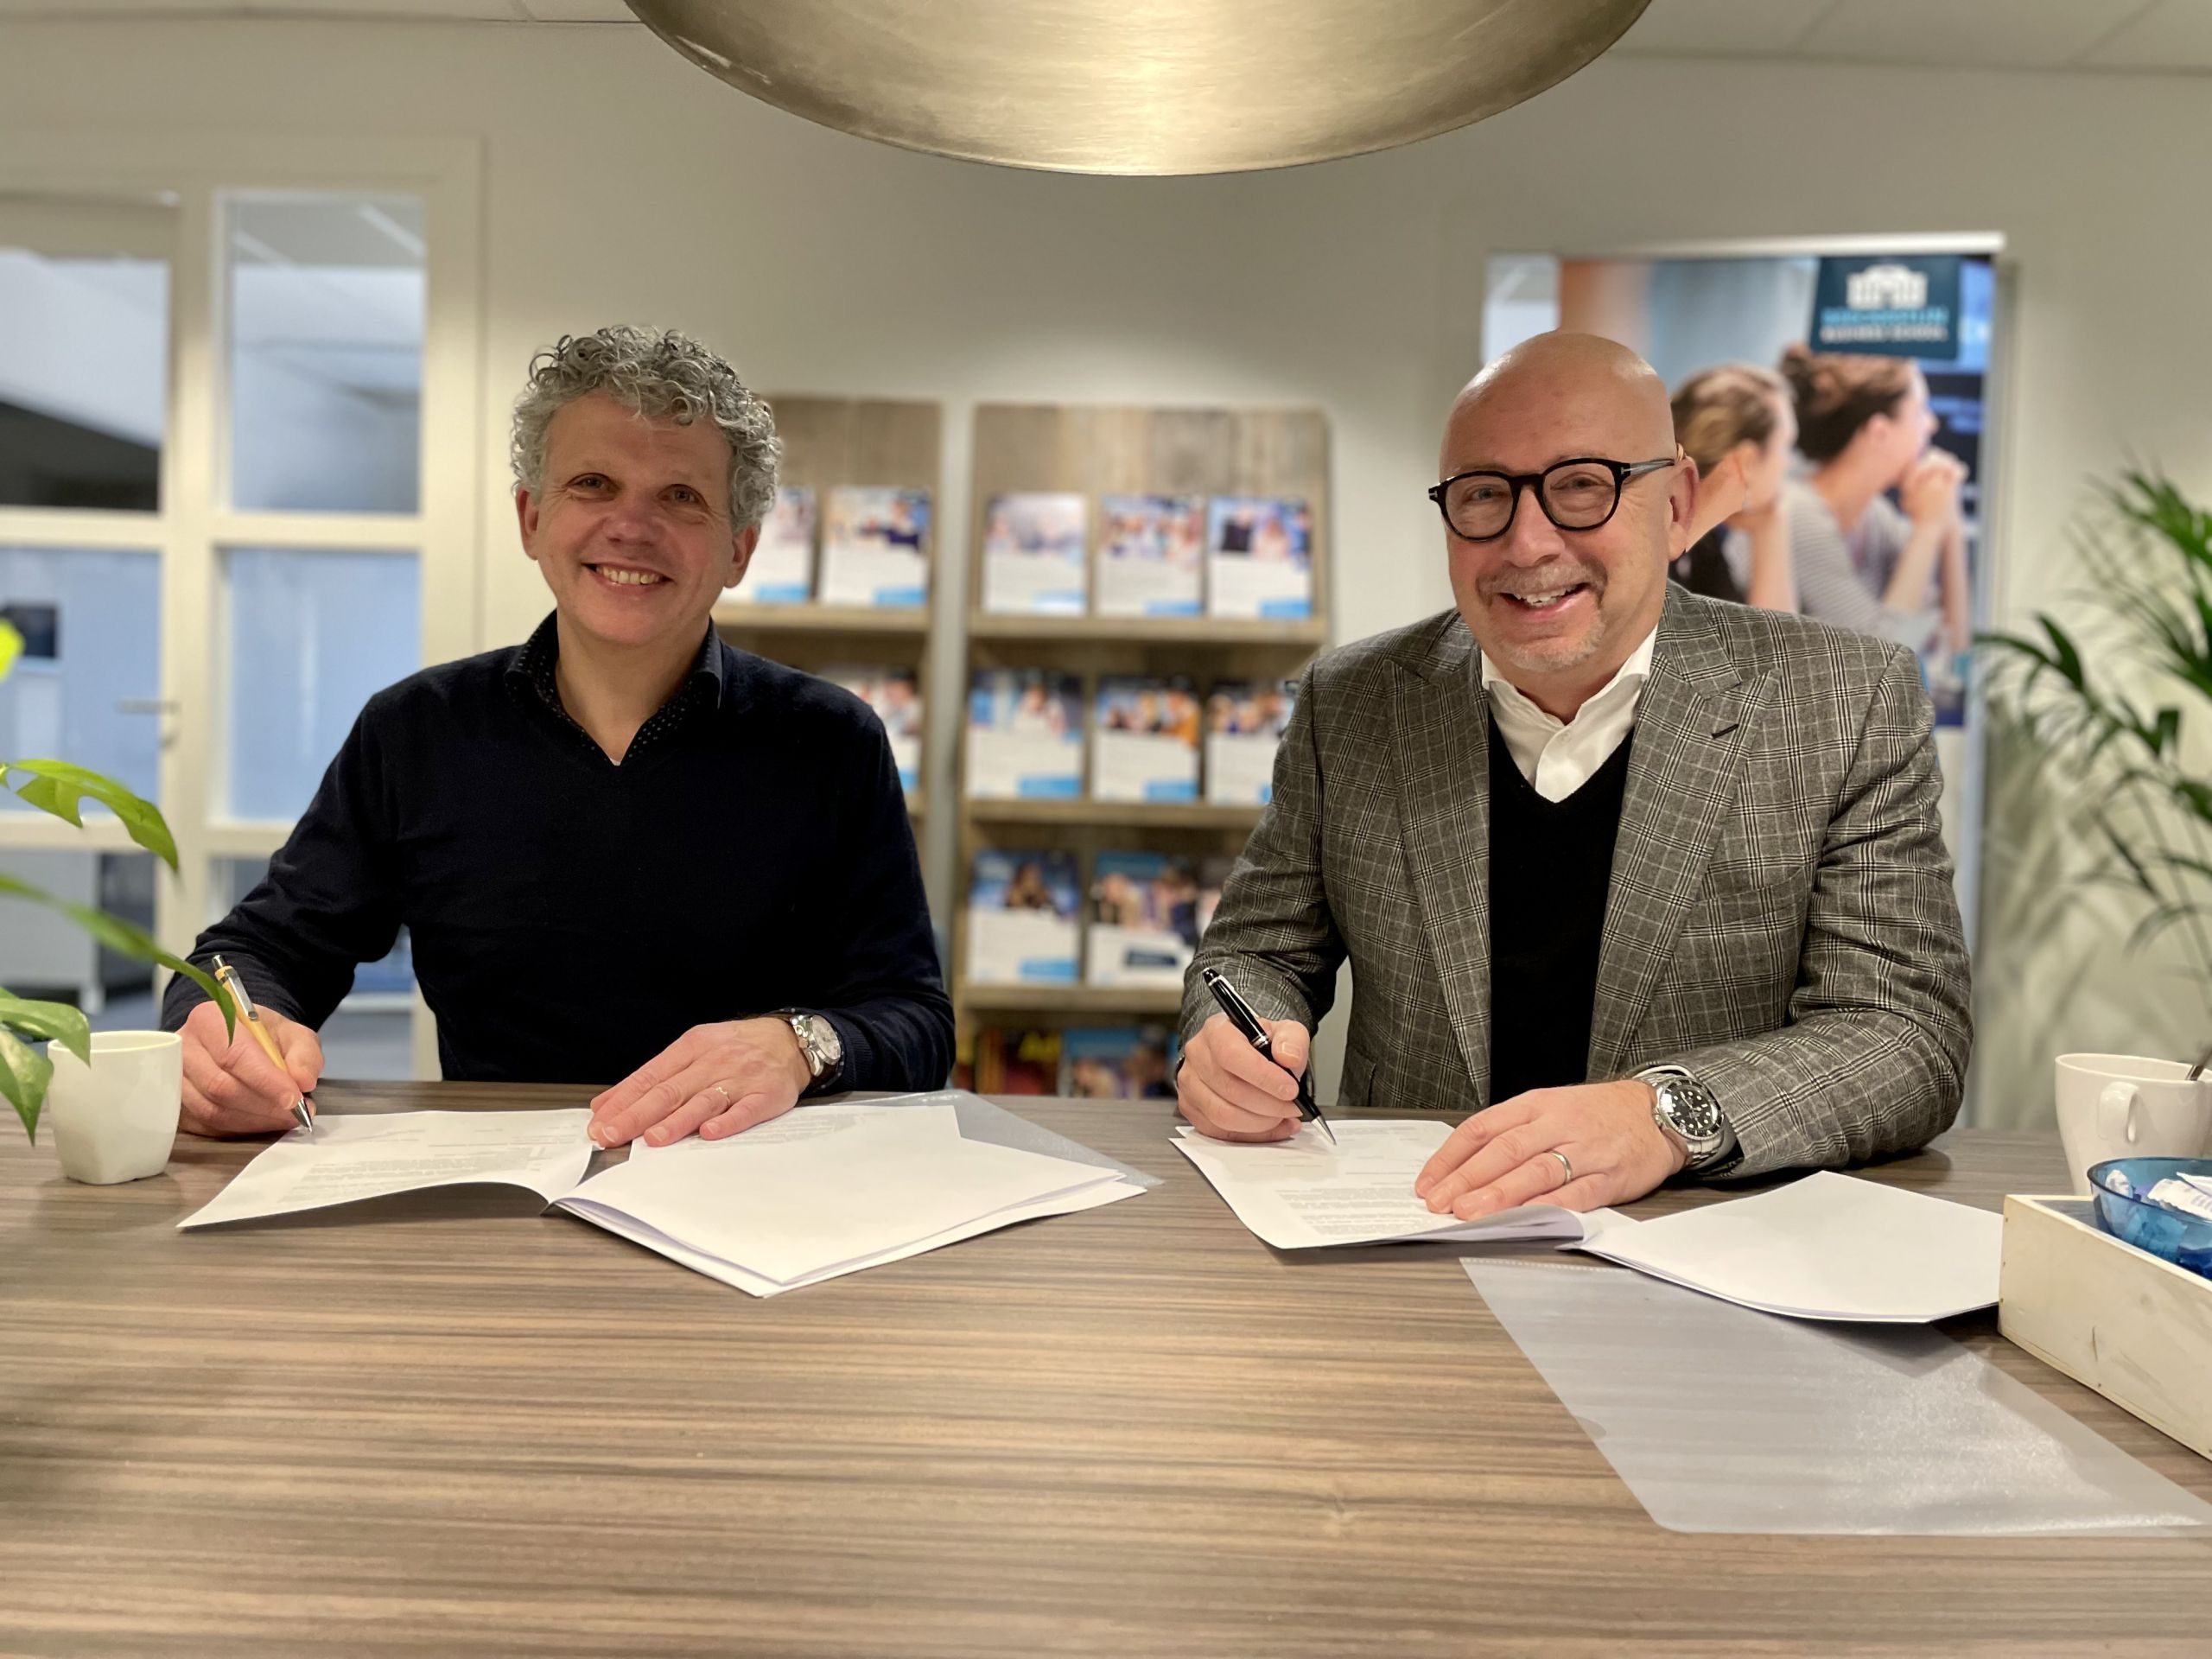 Sign partnership Beeckestijn Business School Hans Molenaar and Luc van Bussel Onemeeting.com